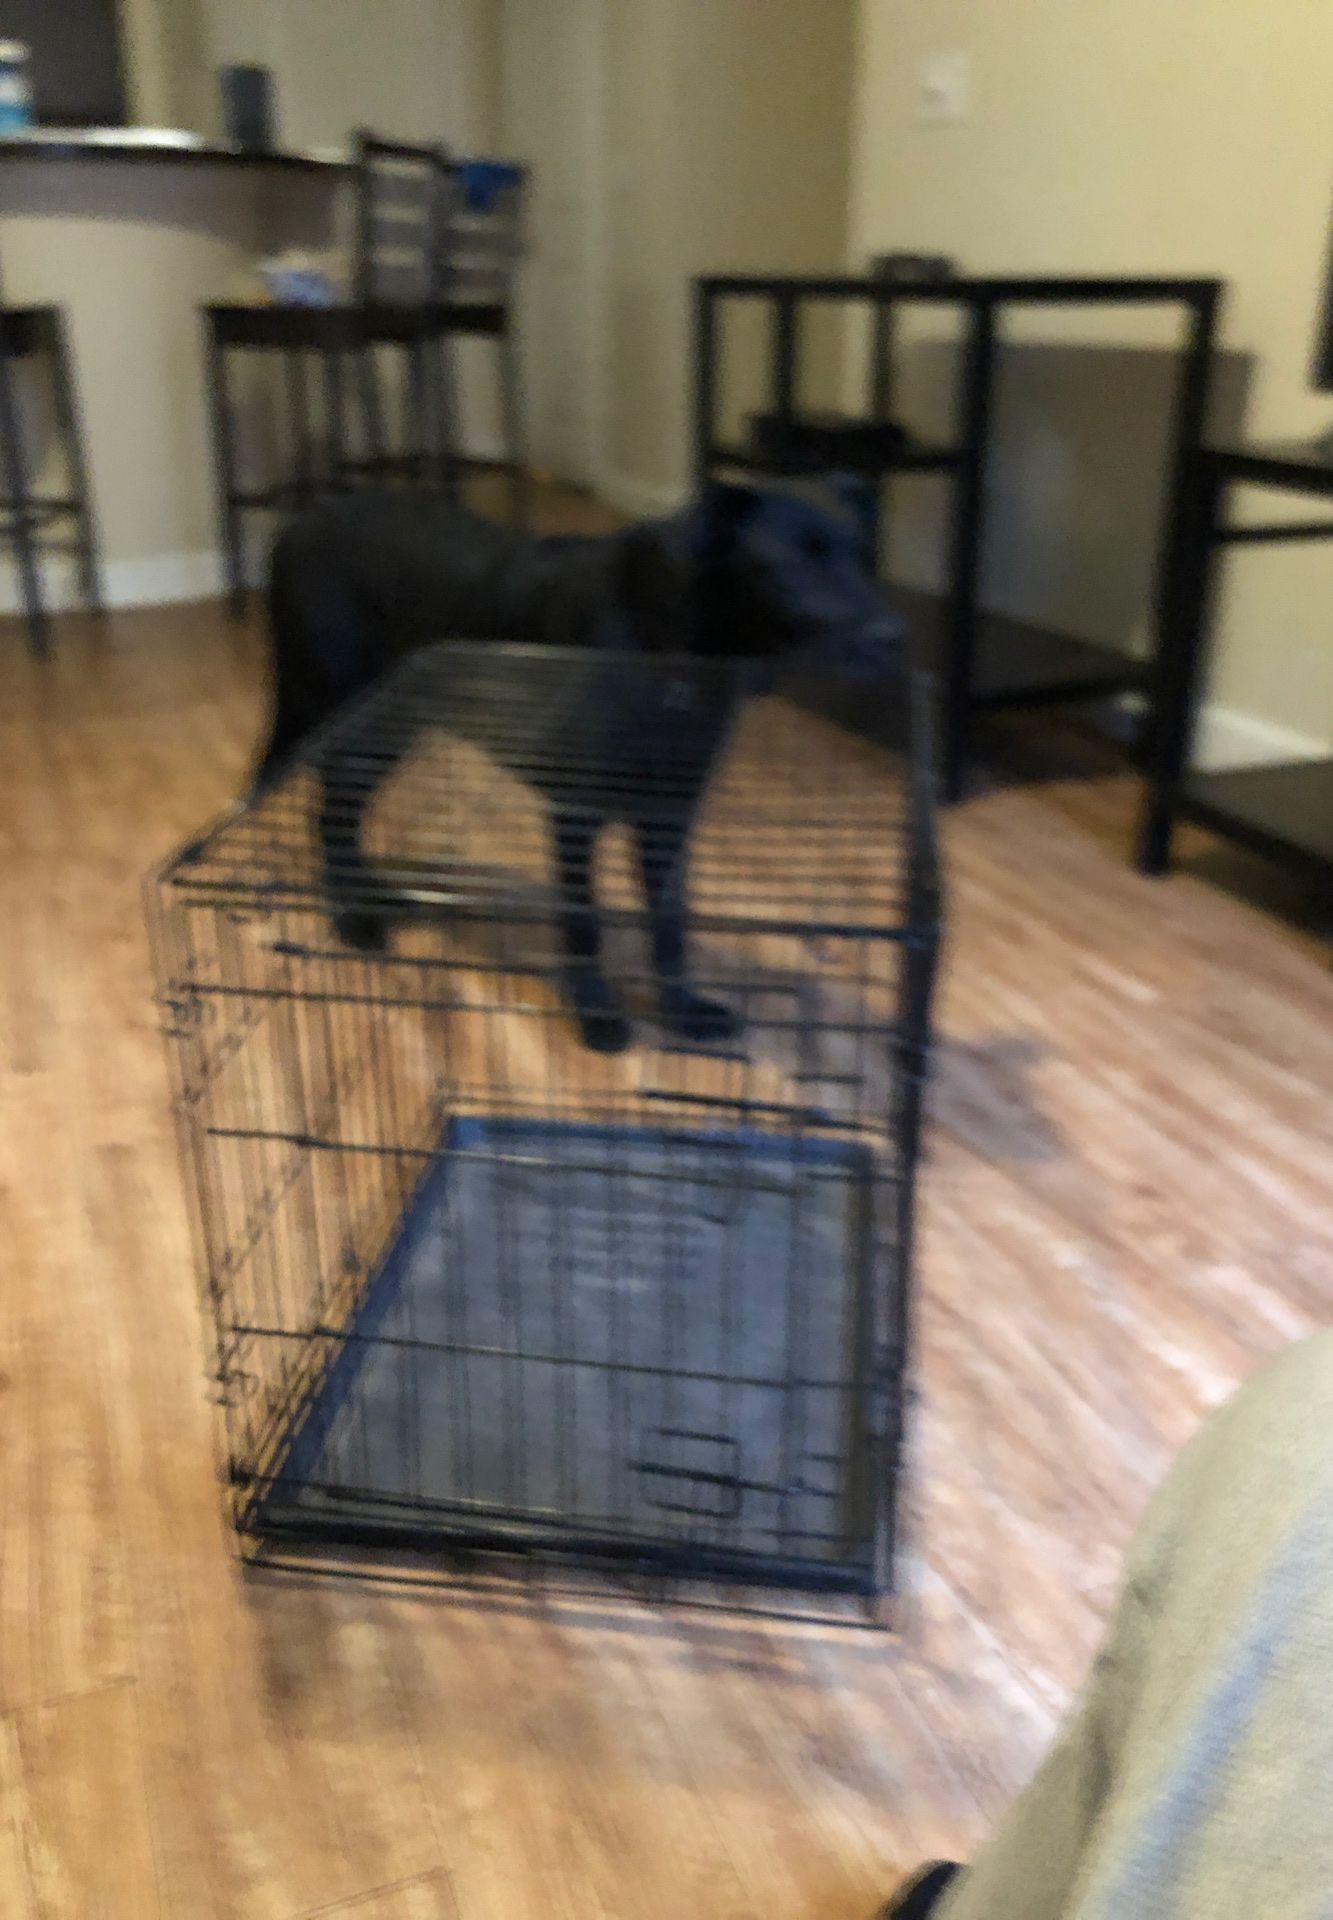 Medium sized dog cage